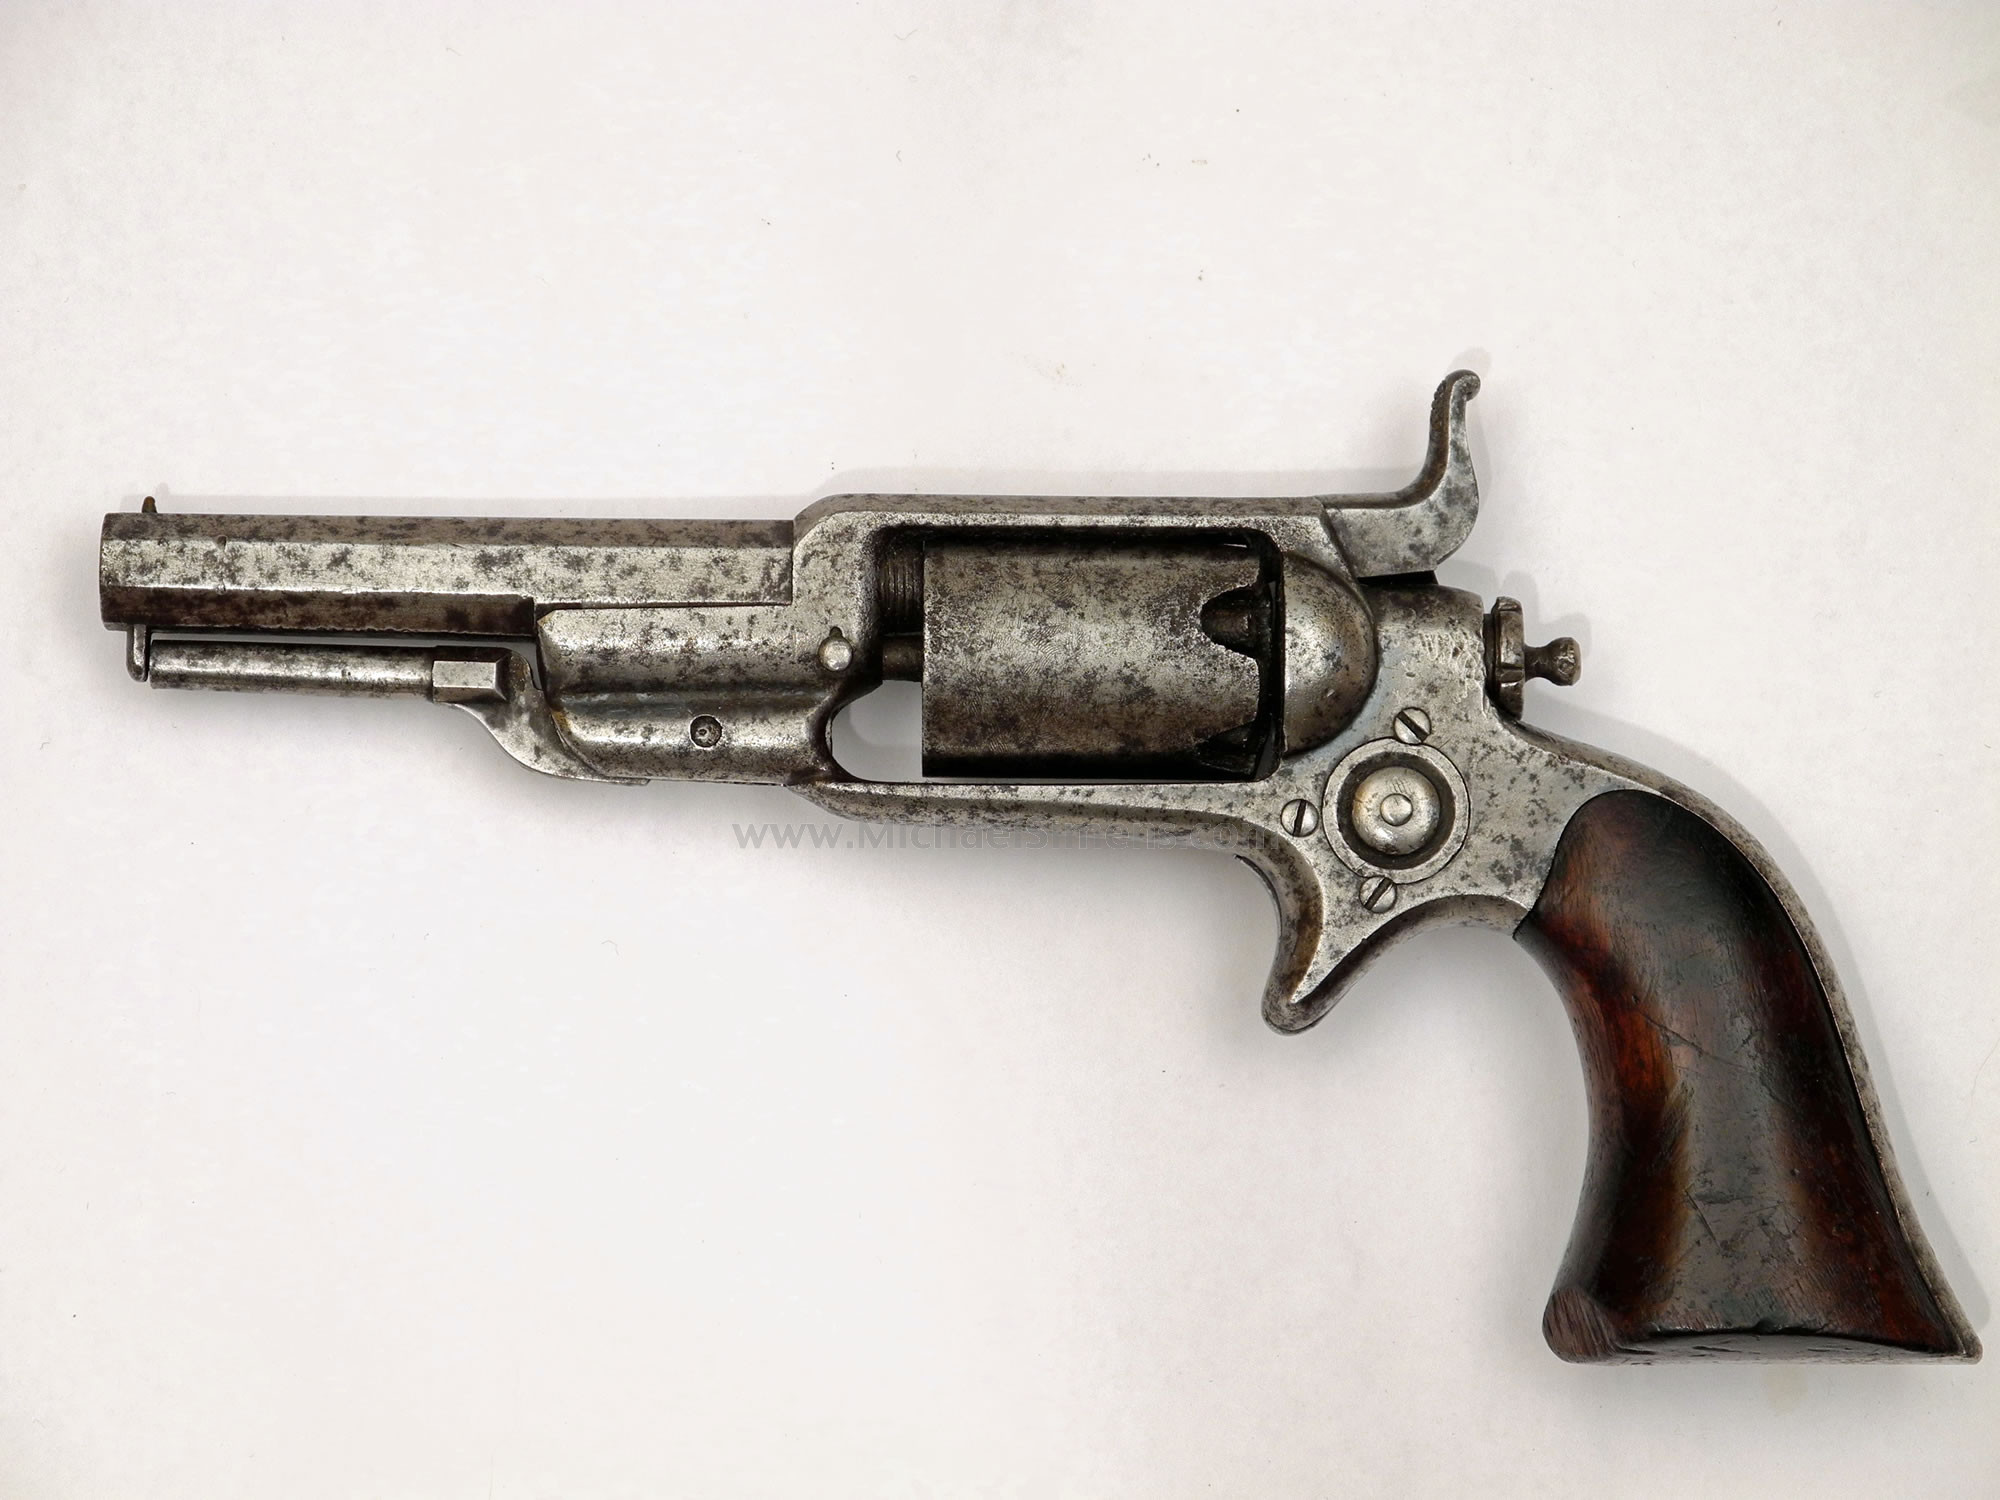 Colt Root Revolver, Model 3